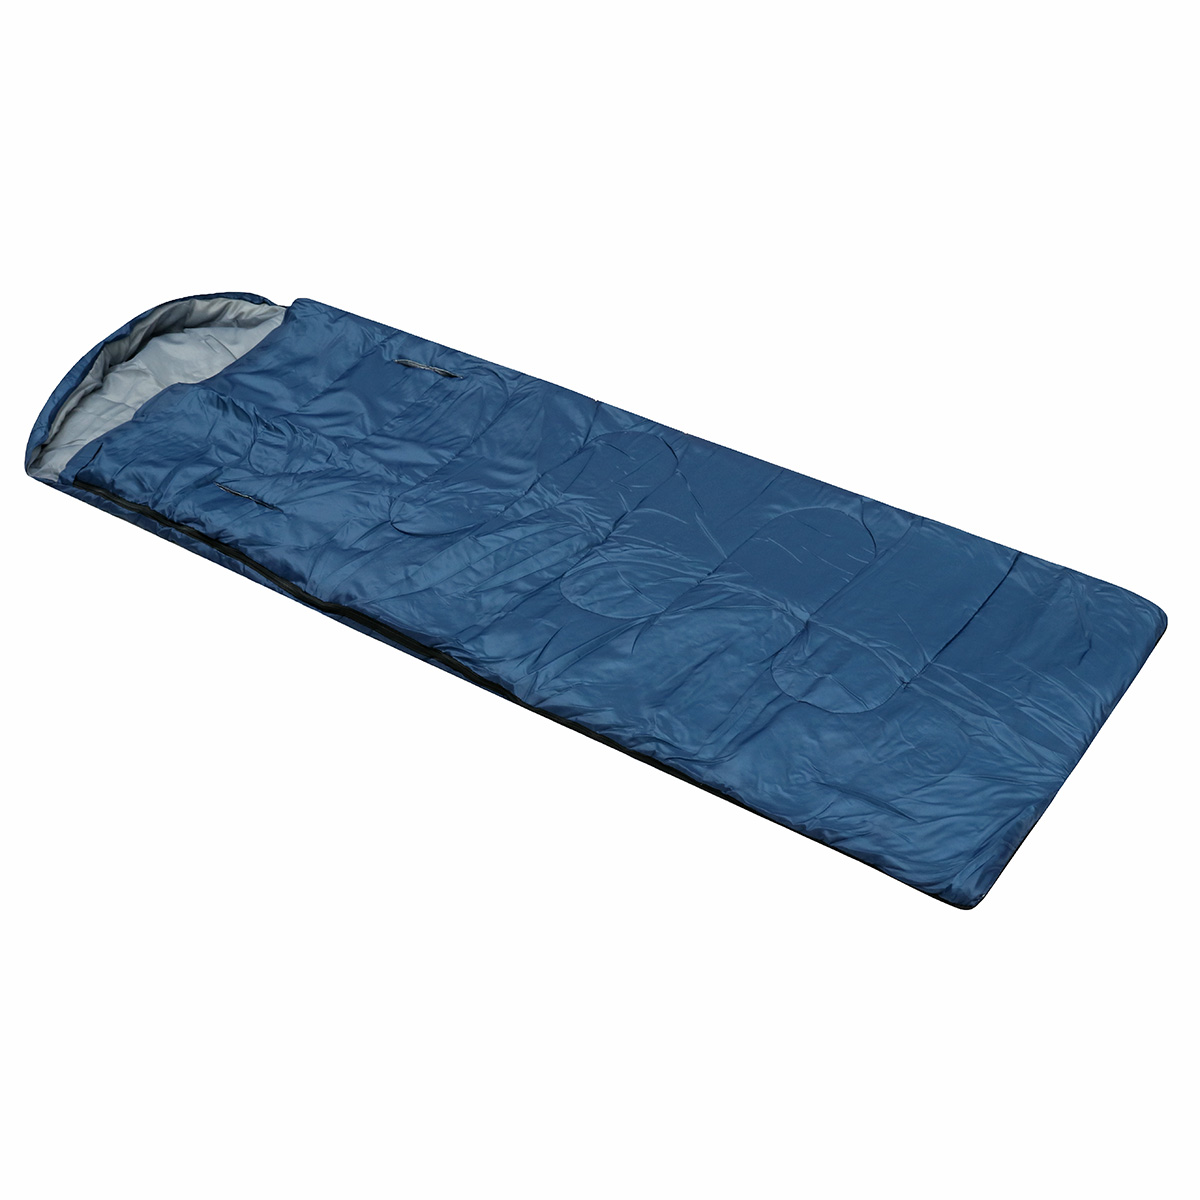 10x75CM-Waterproof-Camping-Envelope-Sleeping-Bag-Outdoor-Hiking-Backpacking-Sleeping-Bag-with-Compre-1647670-8